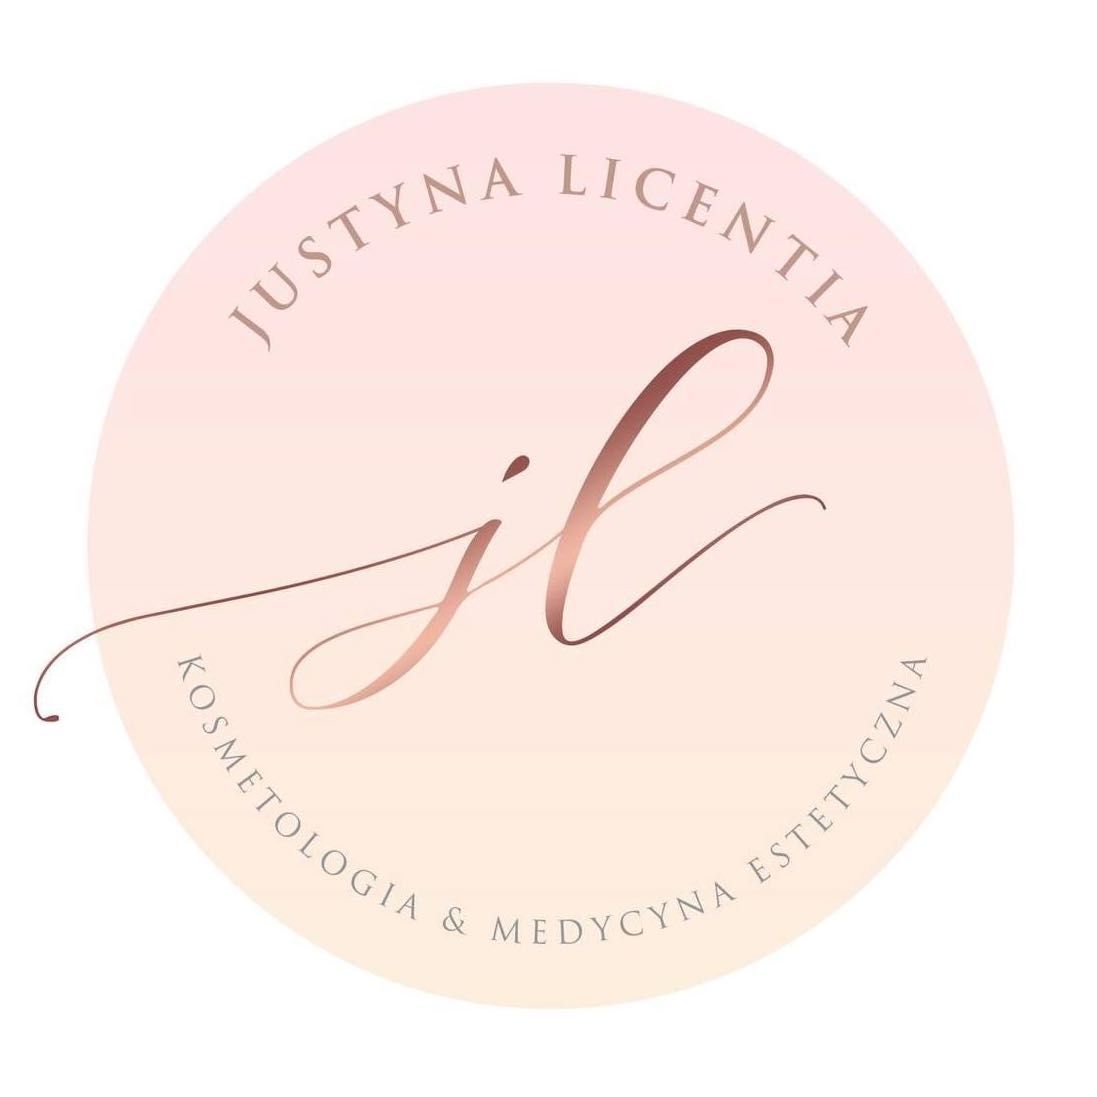 Justyna Licentia - kosmetologia i medycyna estetyczna, Trzebińska 52, 32-065, Krzeszowice